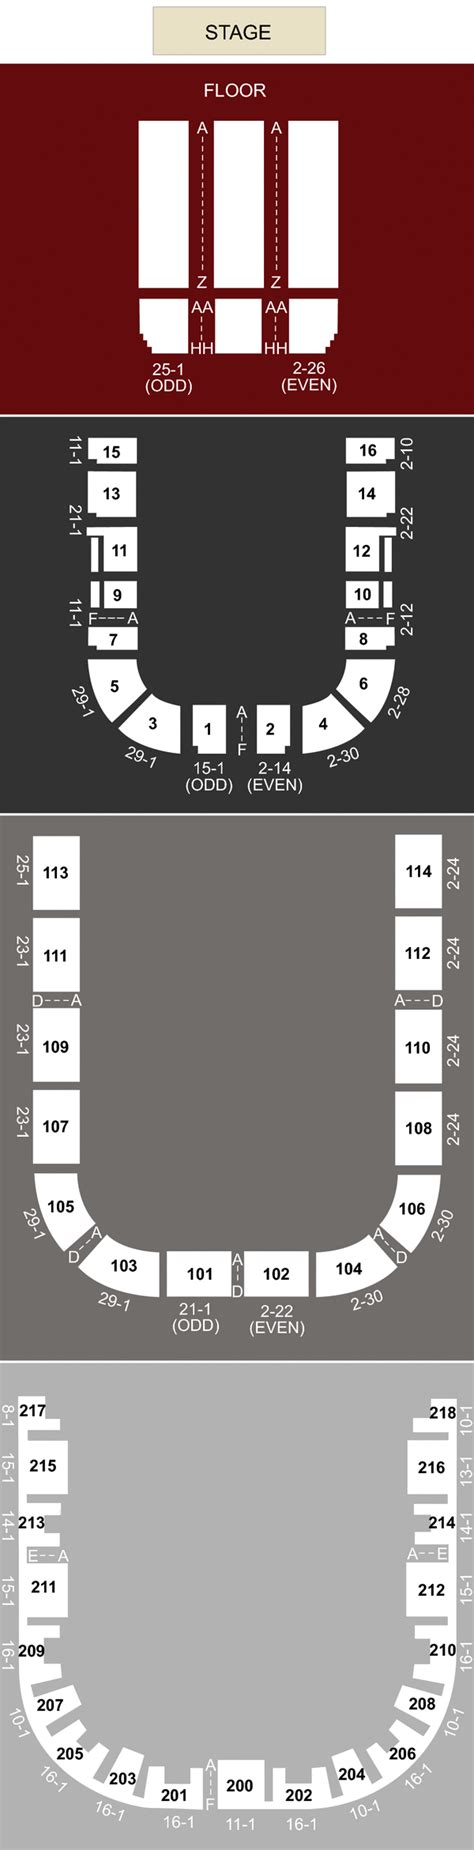 Sacramento Memorial Auditorium Sacramento Ca Seating Chart And Stage